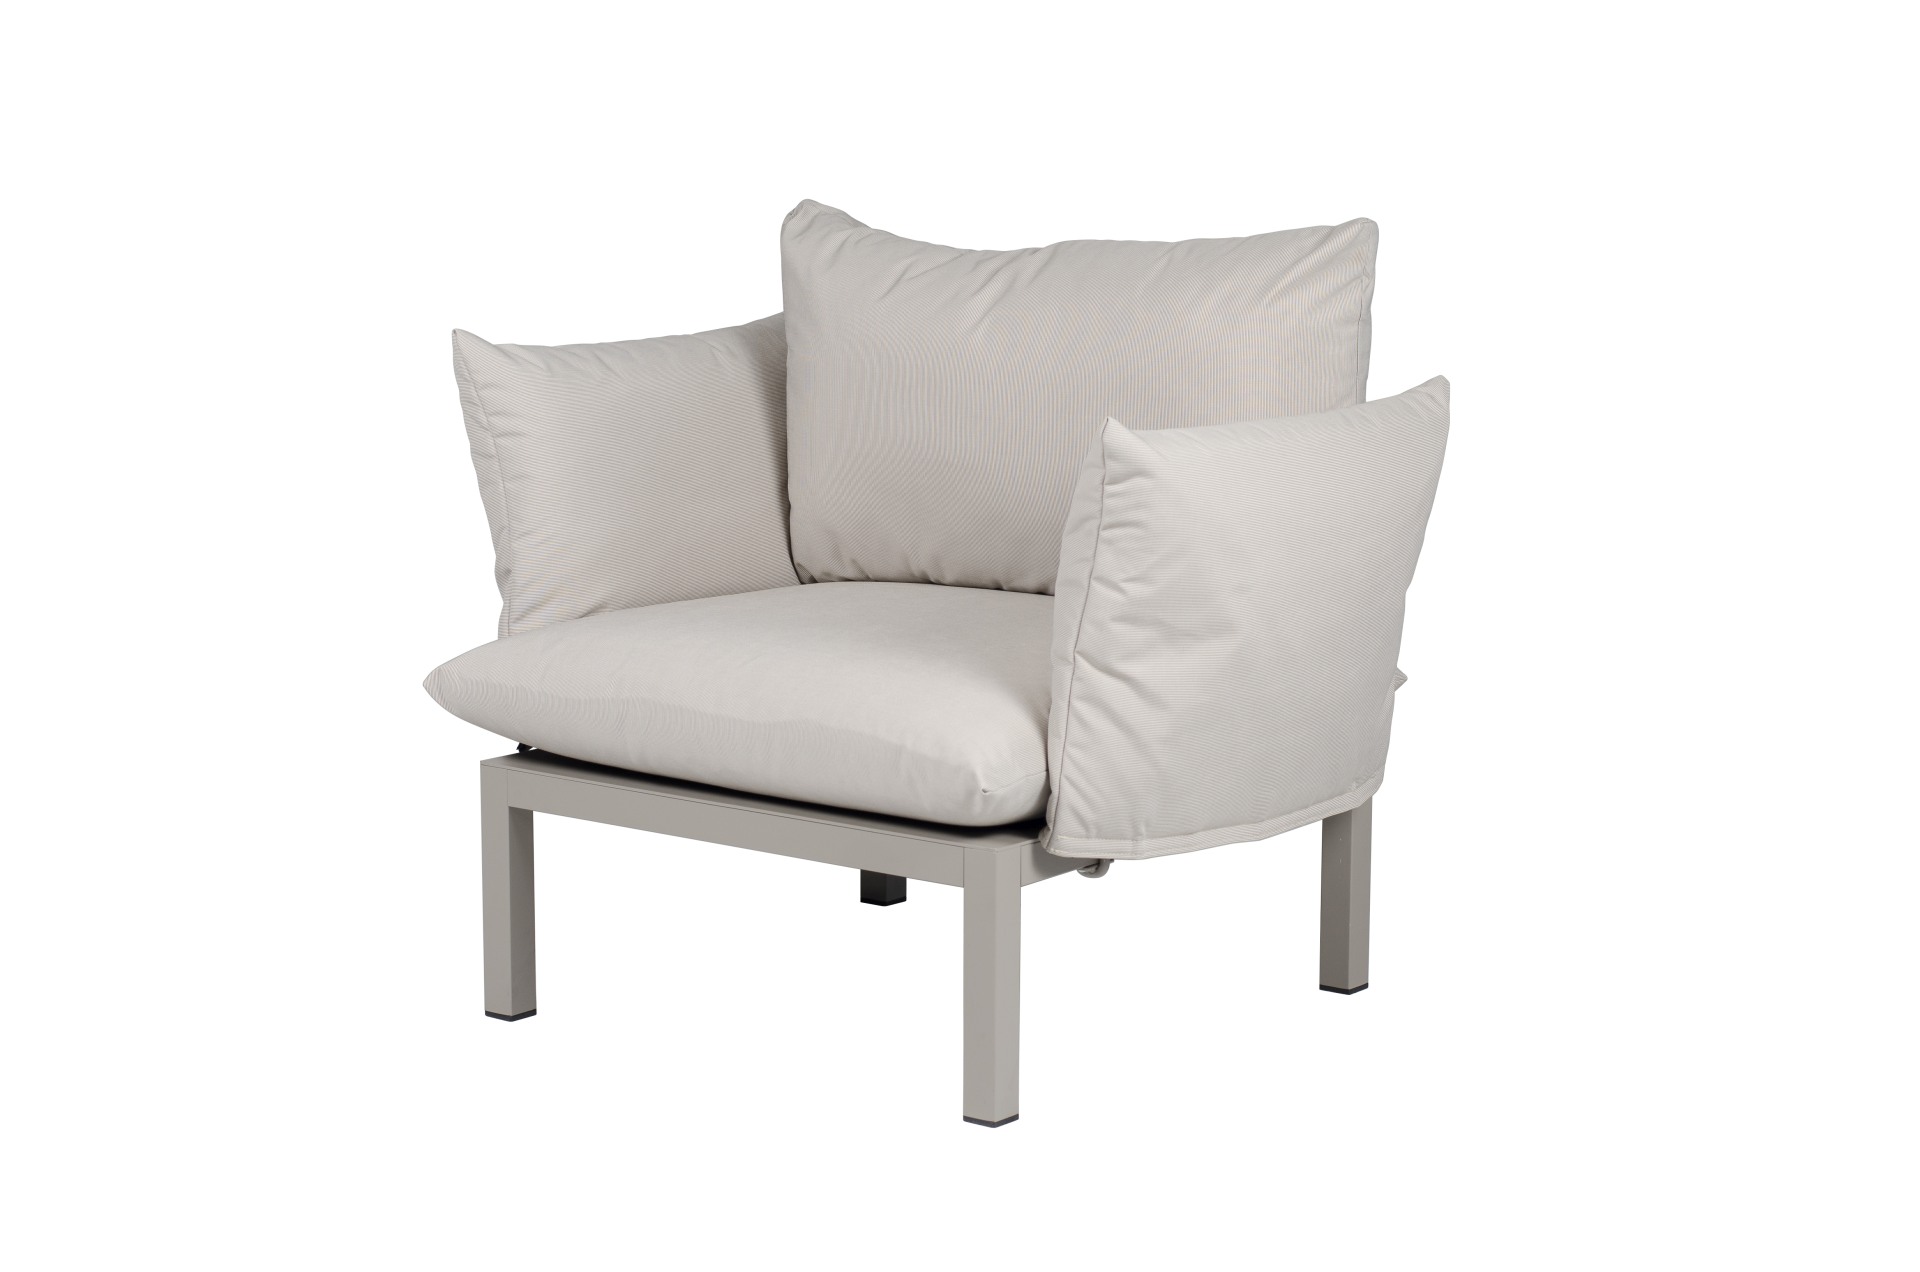 Die Gartenlounge Domino bestehend aus einer 5er-Kombination und einem Sessel. Damit ist sie ein echter Hingucker in deinem Garten. Designet wurde es von der Marke Jan Kurtz. Das Gestell ist aus Aluminium und hat eine weiße Farbe. Der Bezug ist Weiß.